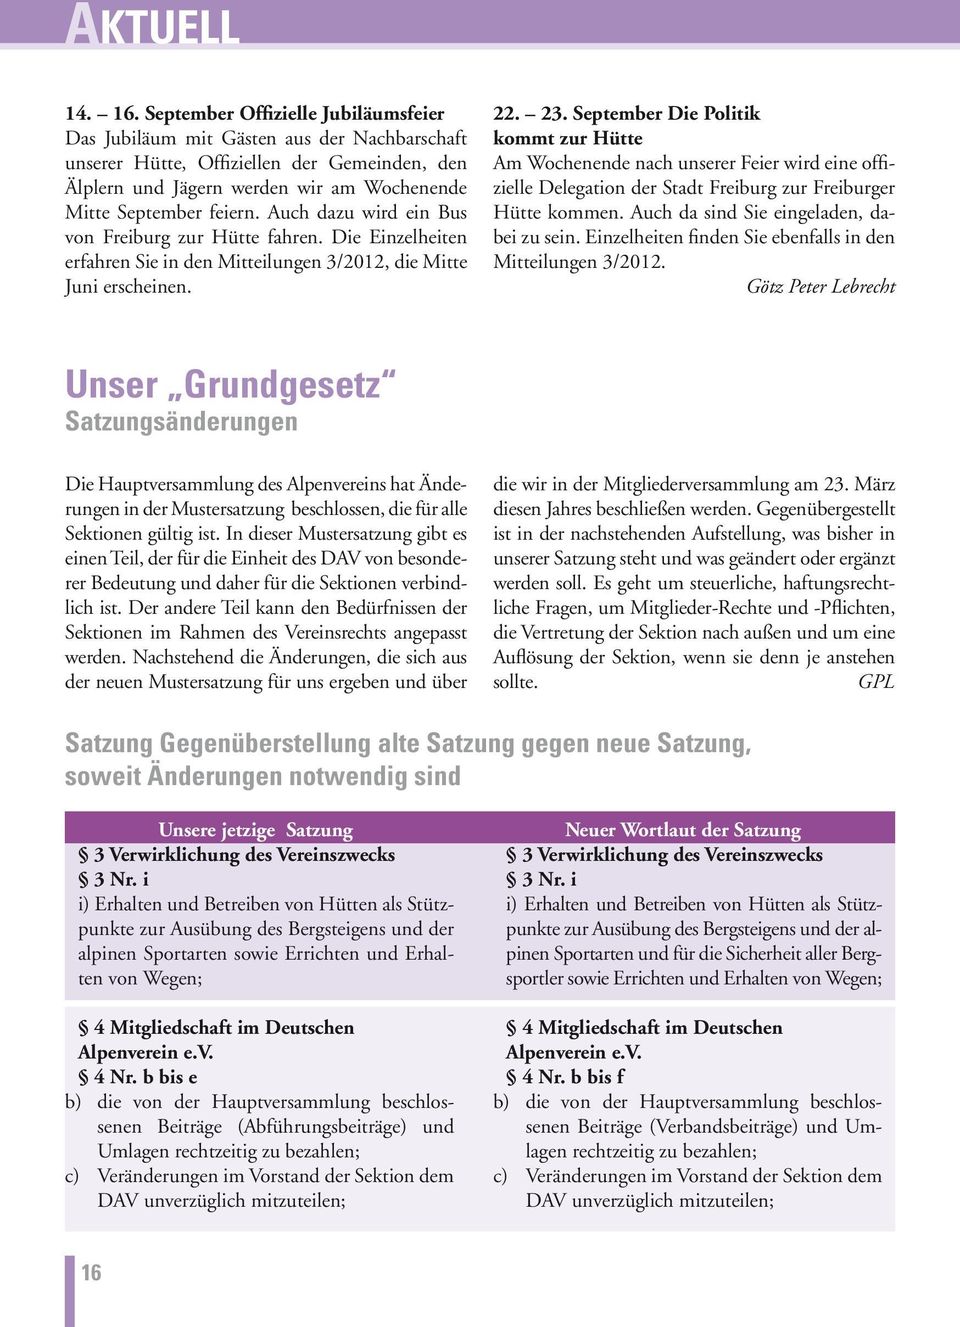 Auch dazu wird ein Bus von Freiburg zur Hütte fahren. Die Einzelheiten erfahren Sie in den Mitteilungen 3/2012, die Mitte Juni erscheinen. 22. 23.